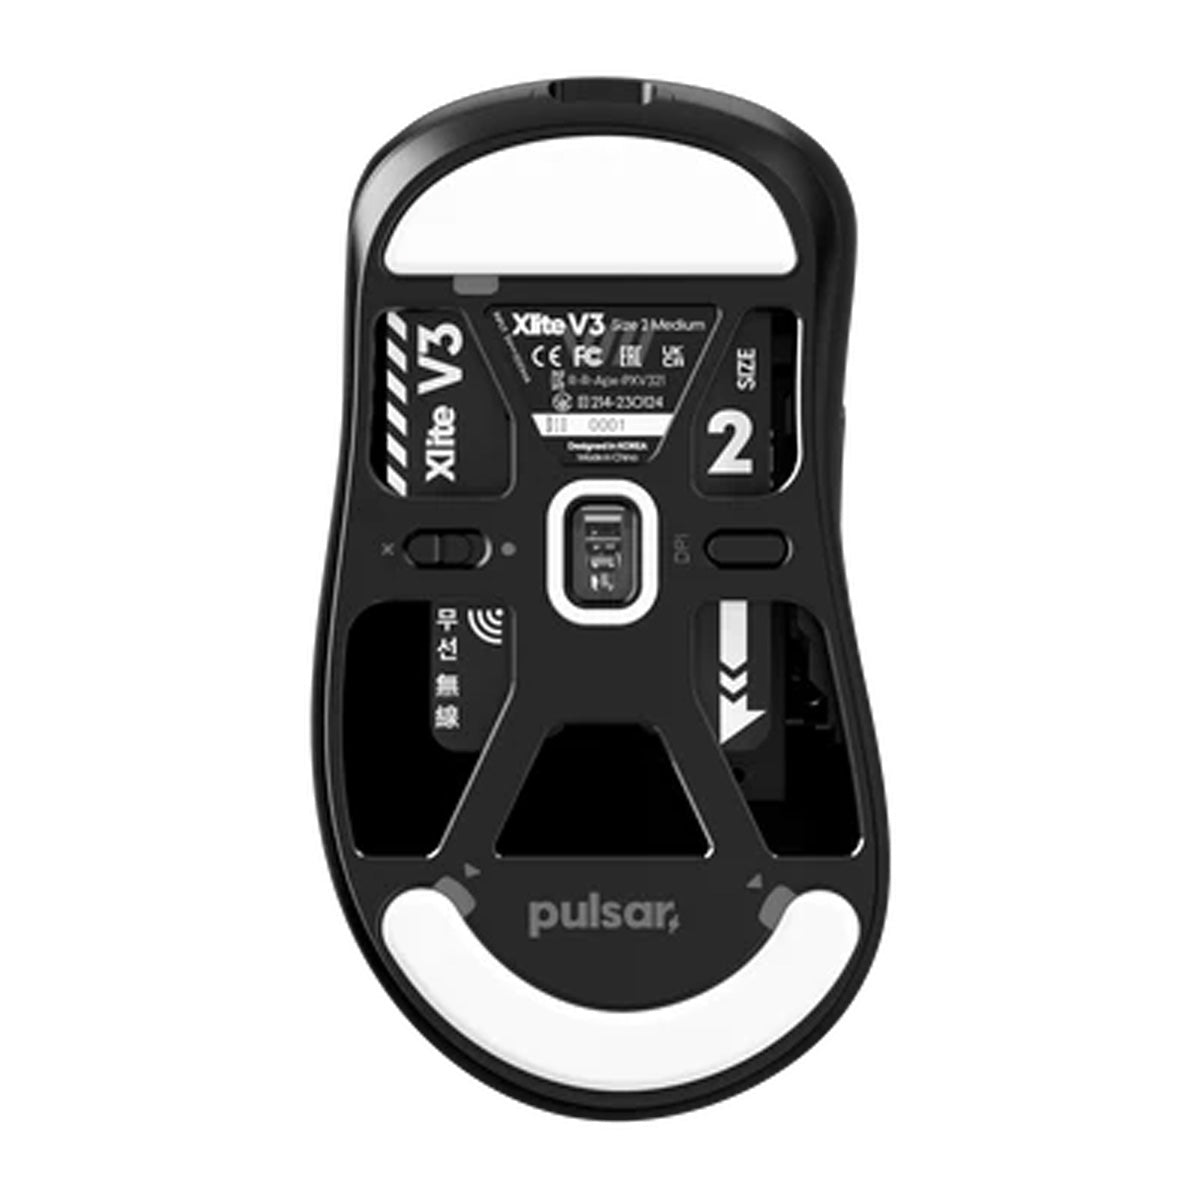 Pulsar Xlite V3 * Wireless Mouse MK28F5TFIQ |65952|